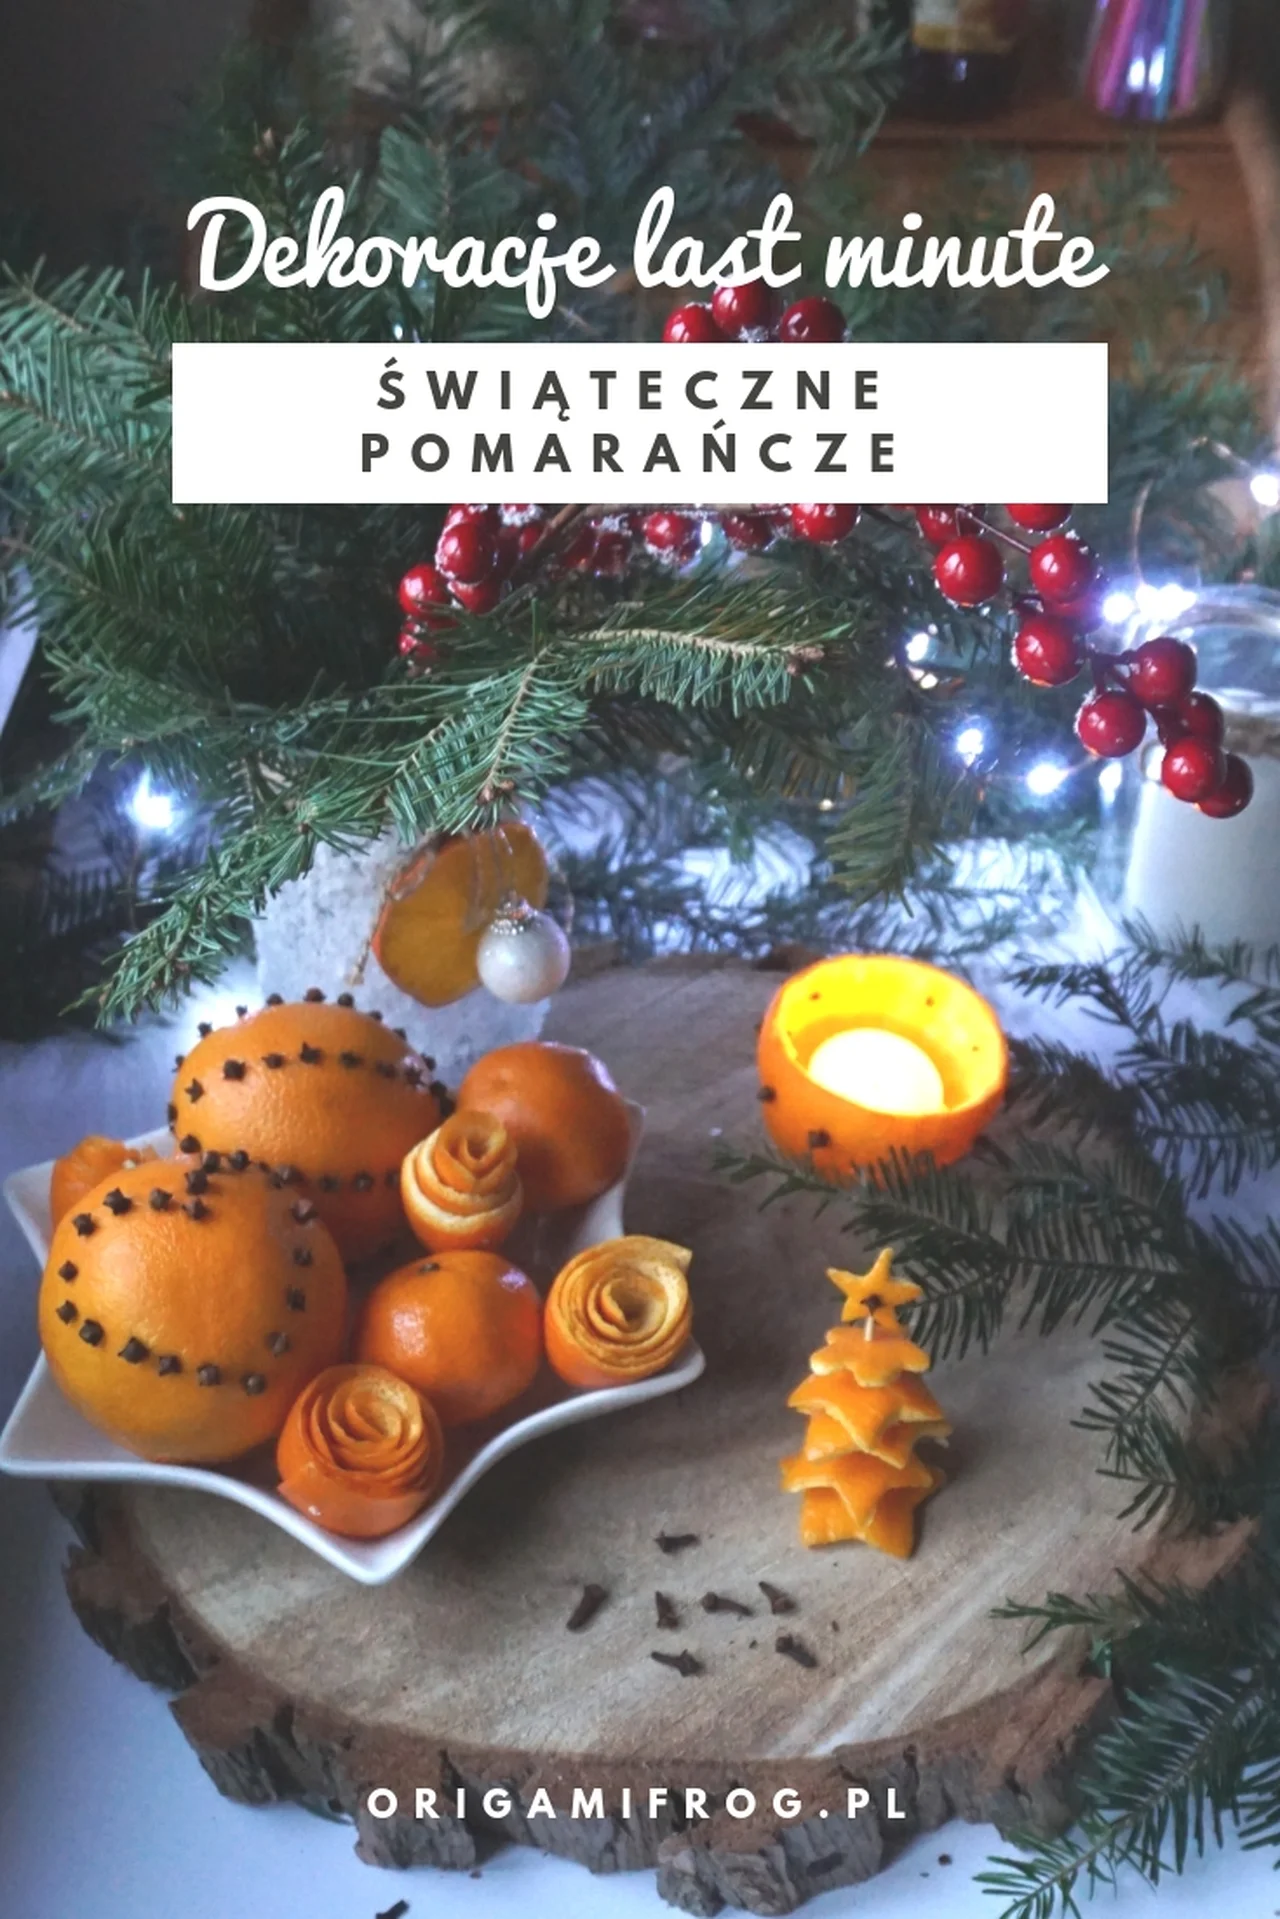 Świąteczne ozdoby last minute – dekoracje z pomarańczy